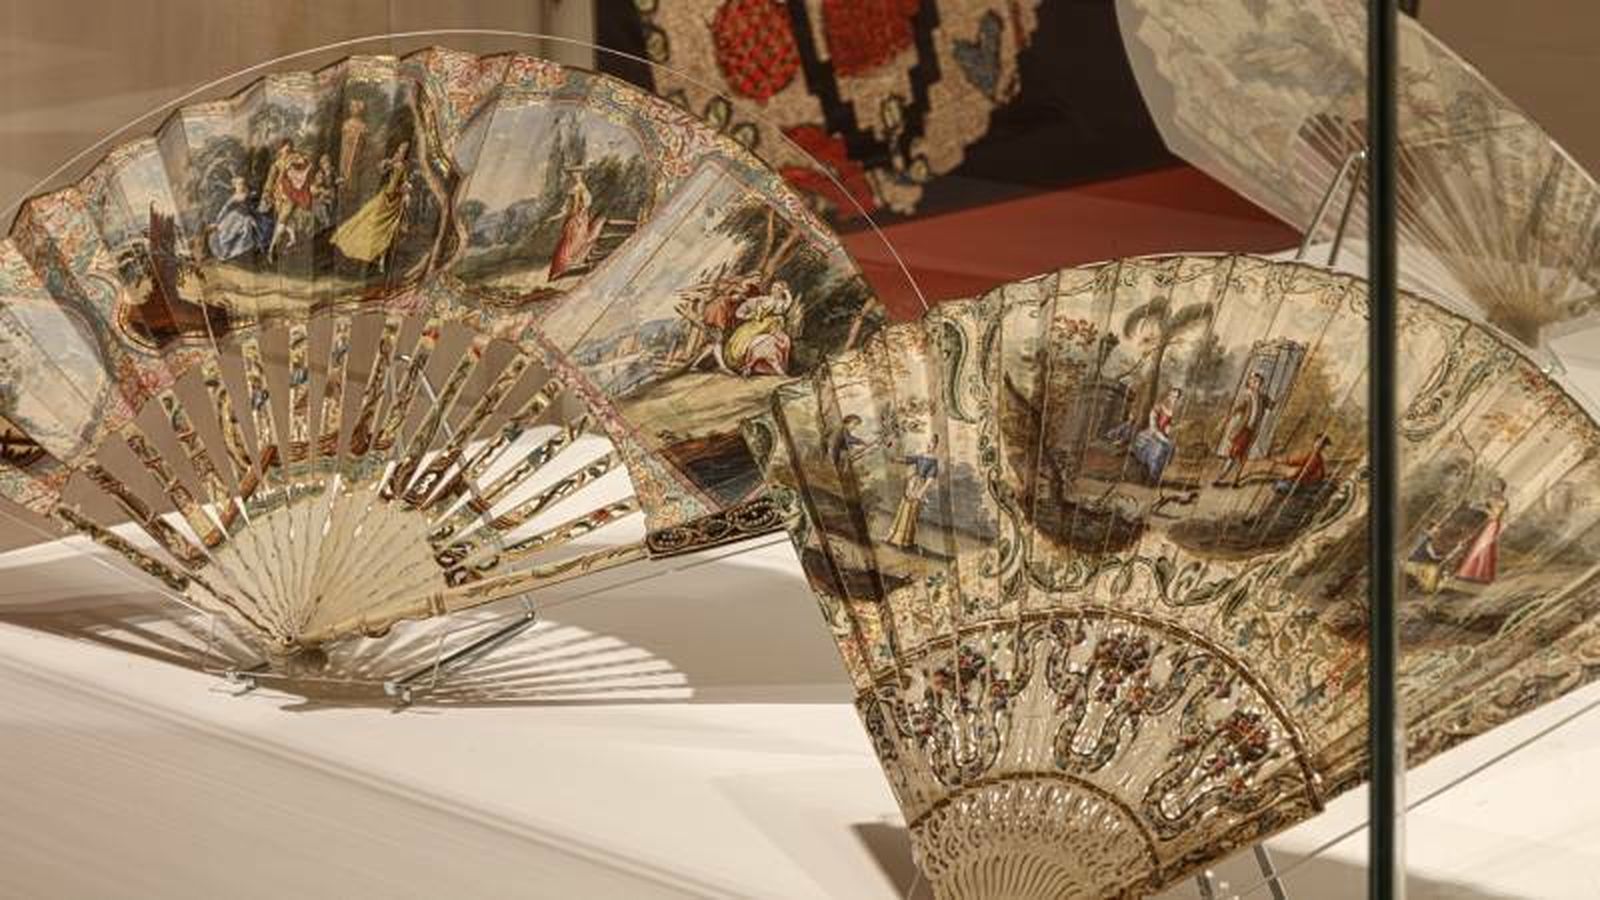 Entre sedas y encajes: la impresionante colección textil del marqués de Cerralbo